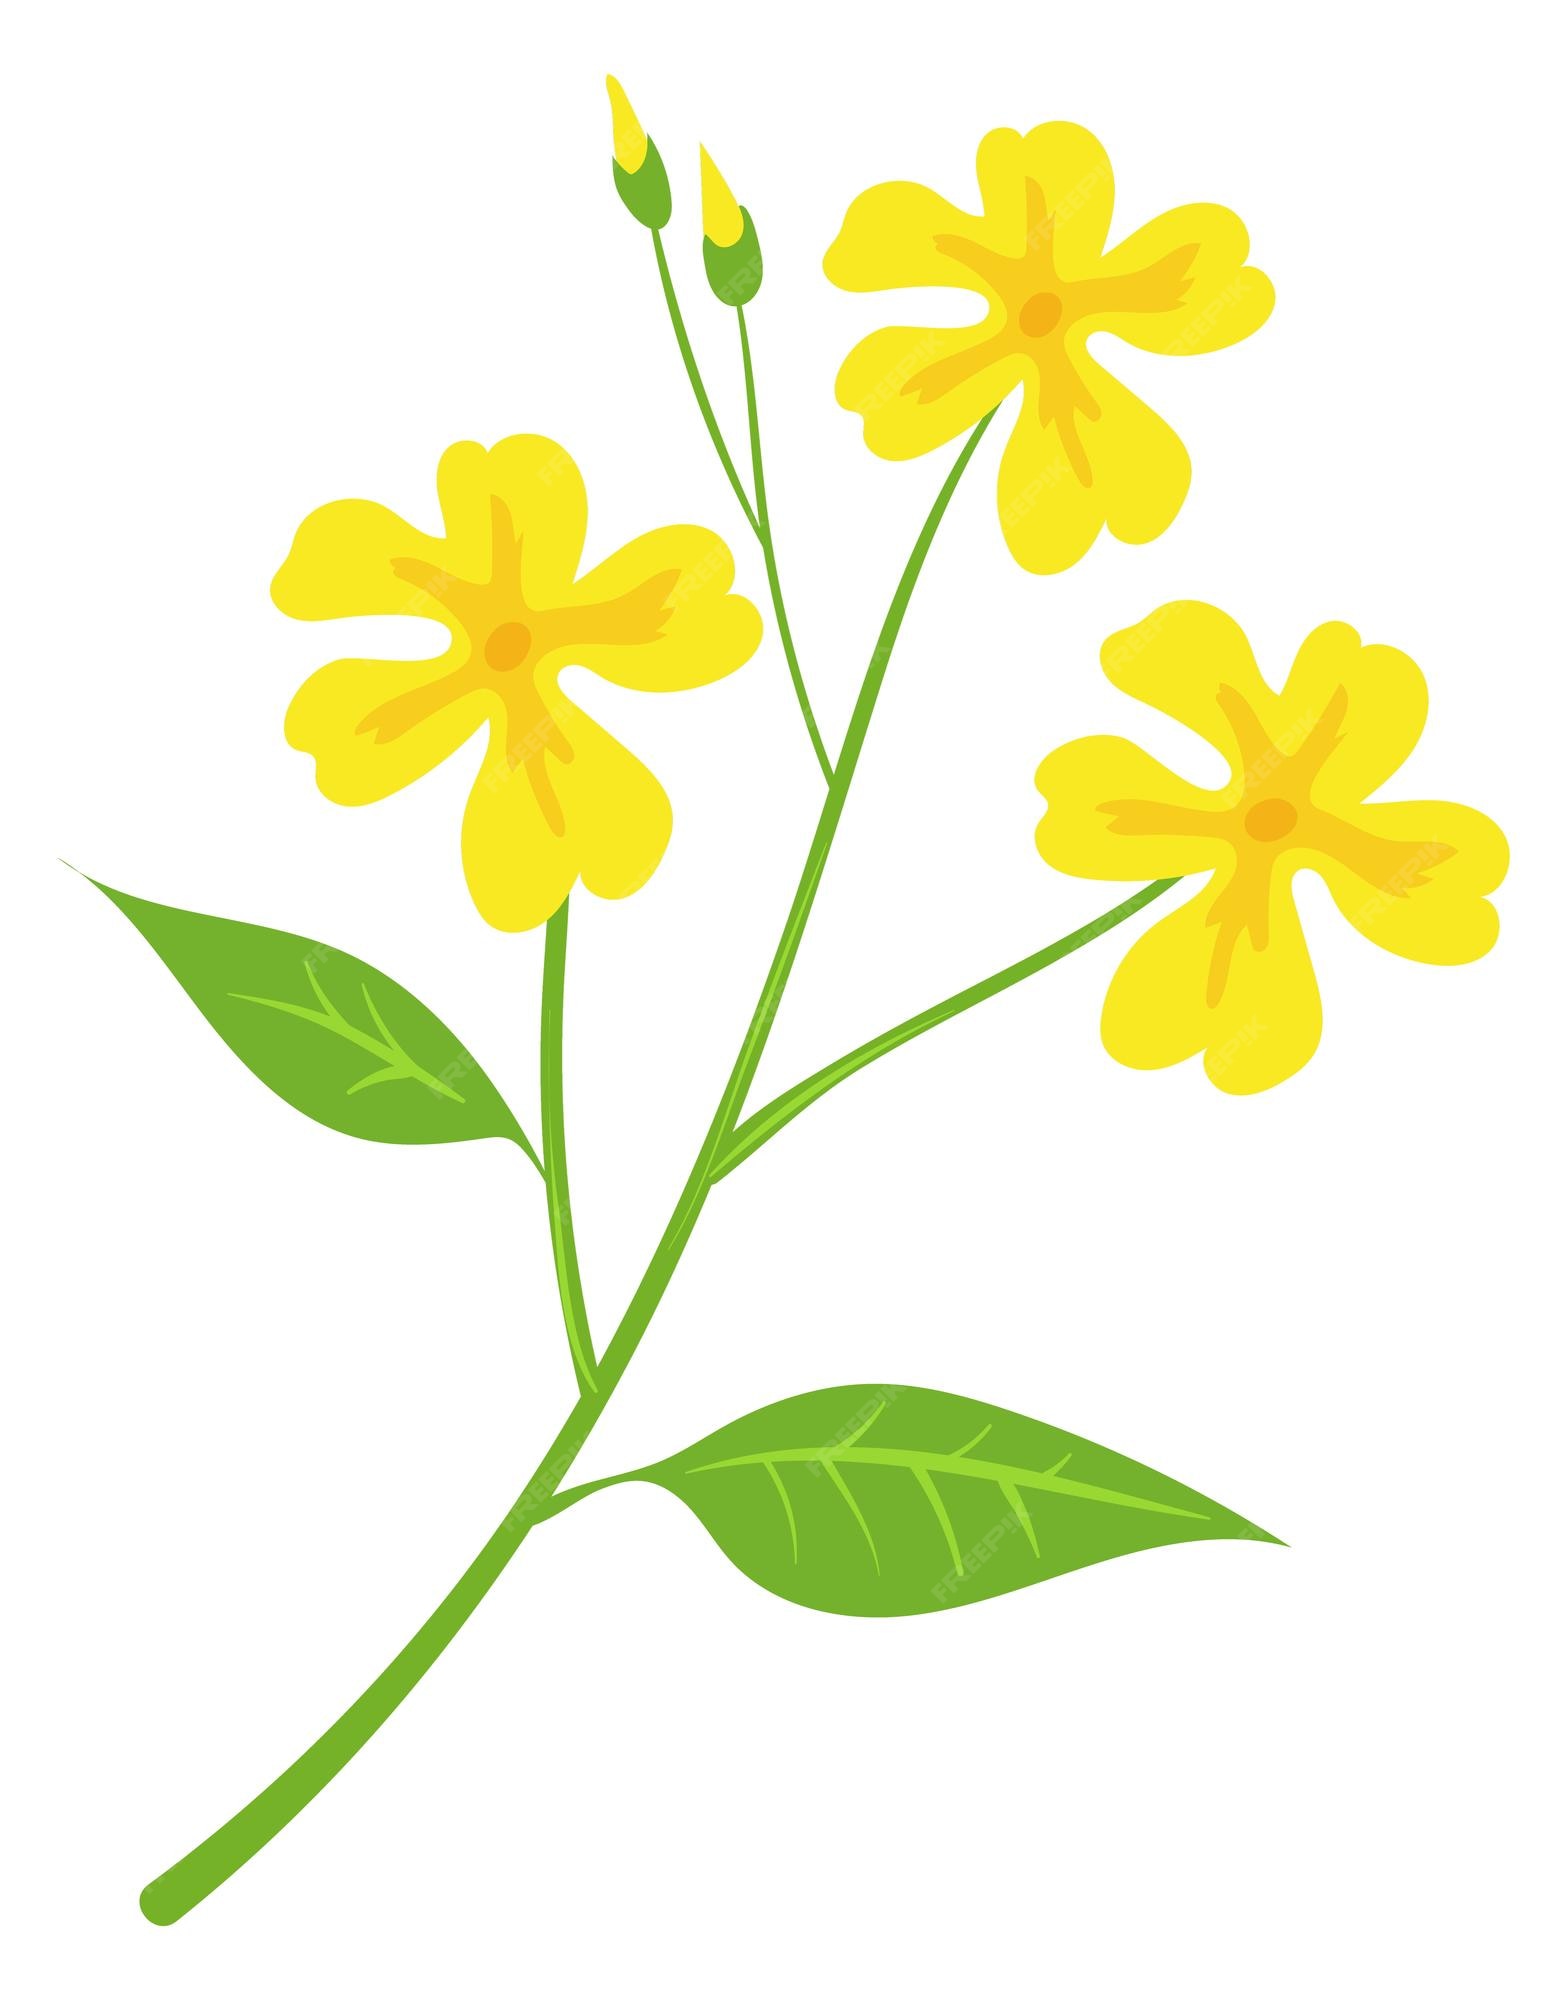 Flores amarillas en rama verde icono floral de dibujos animados | Vector  Premium